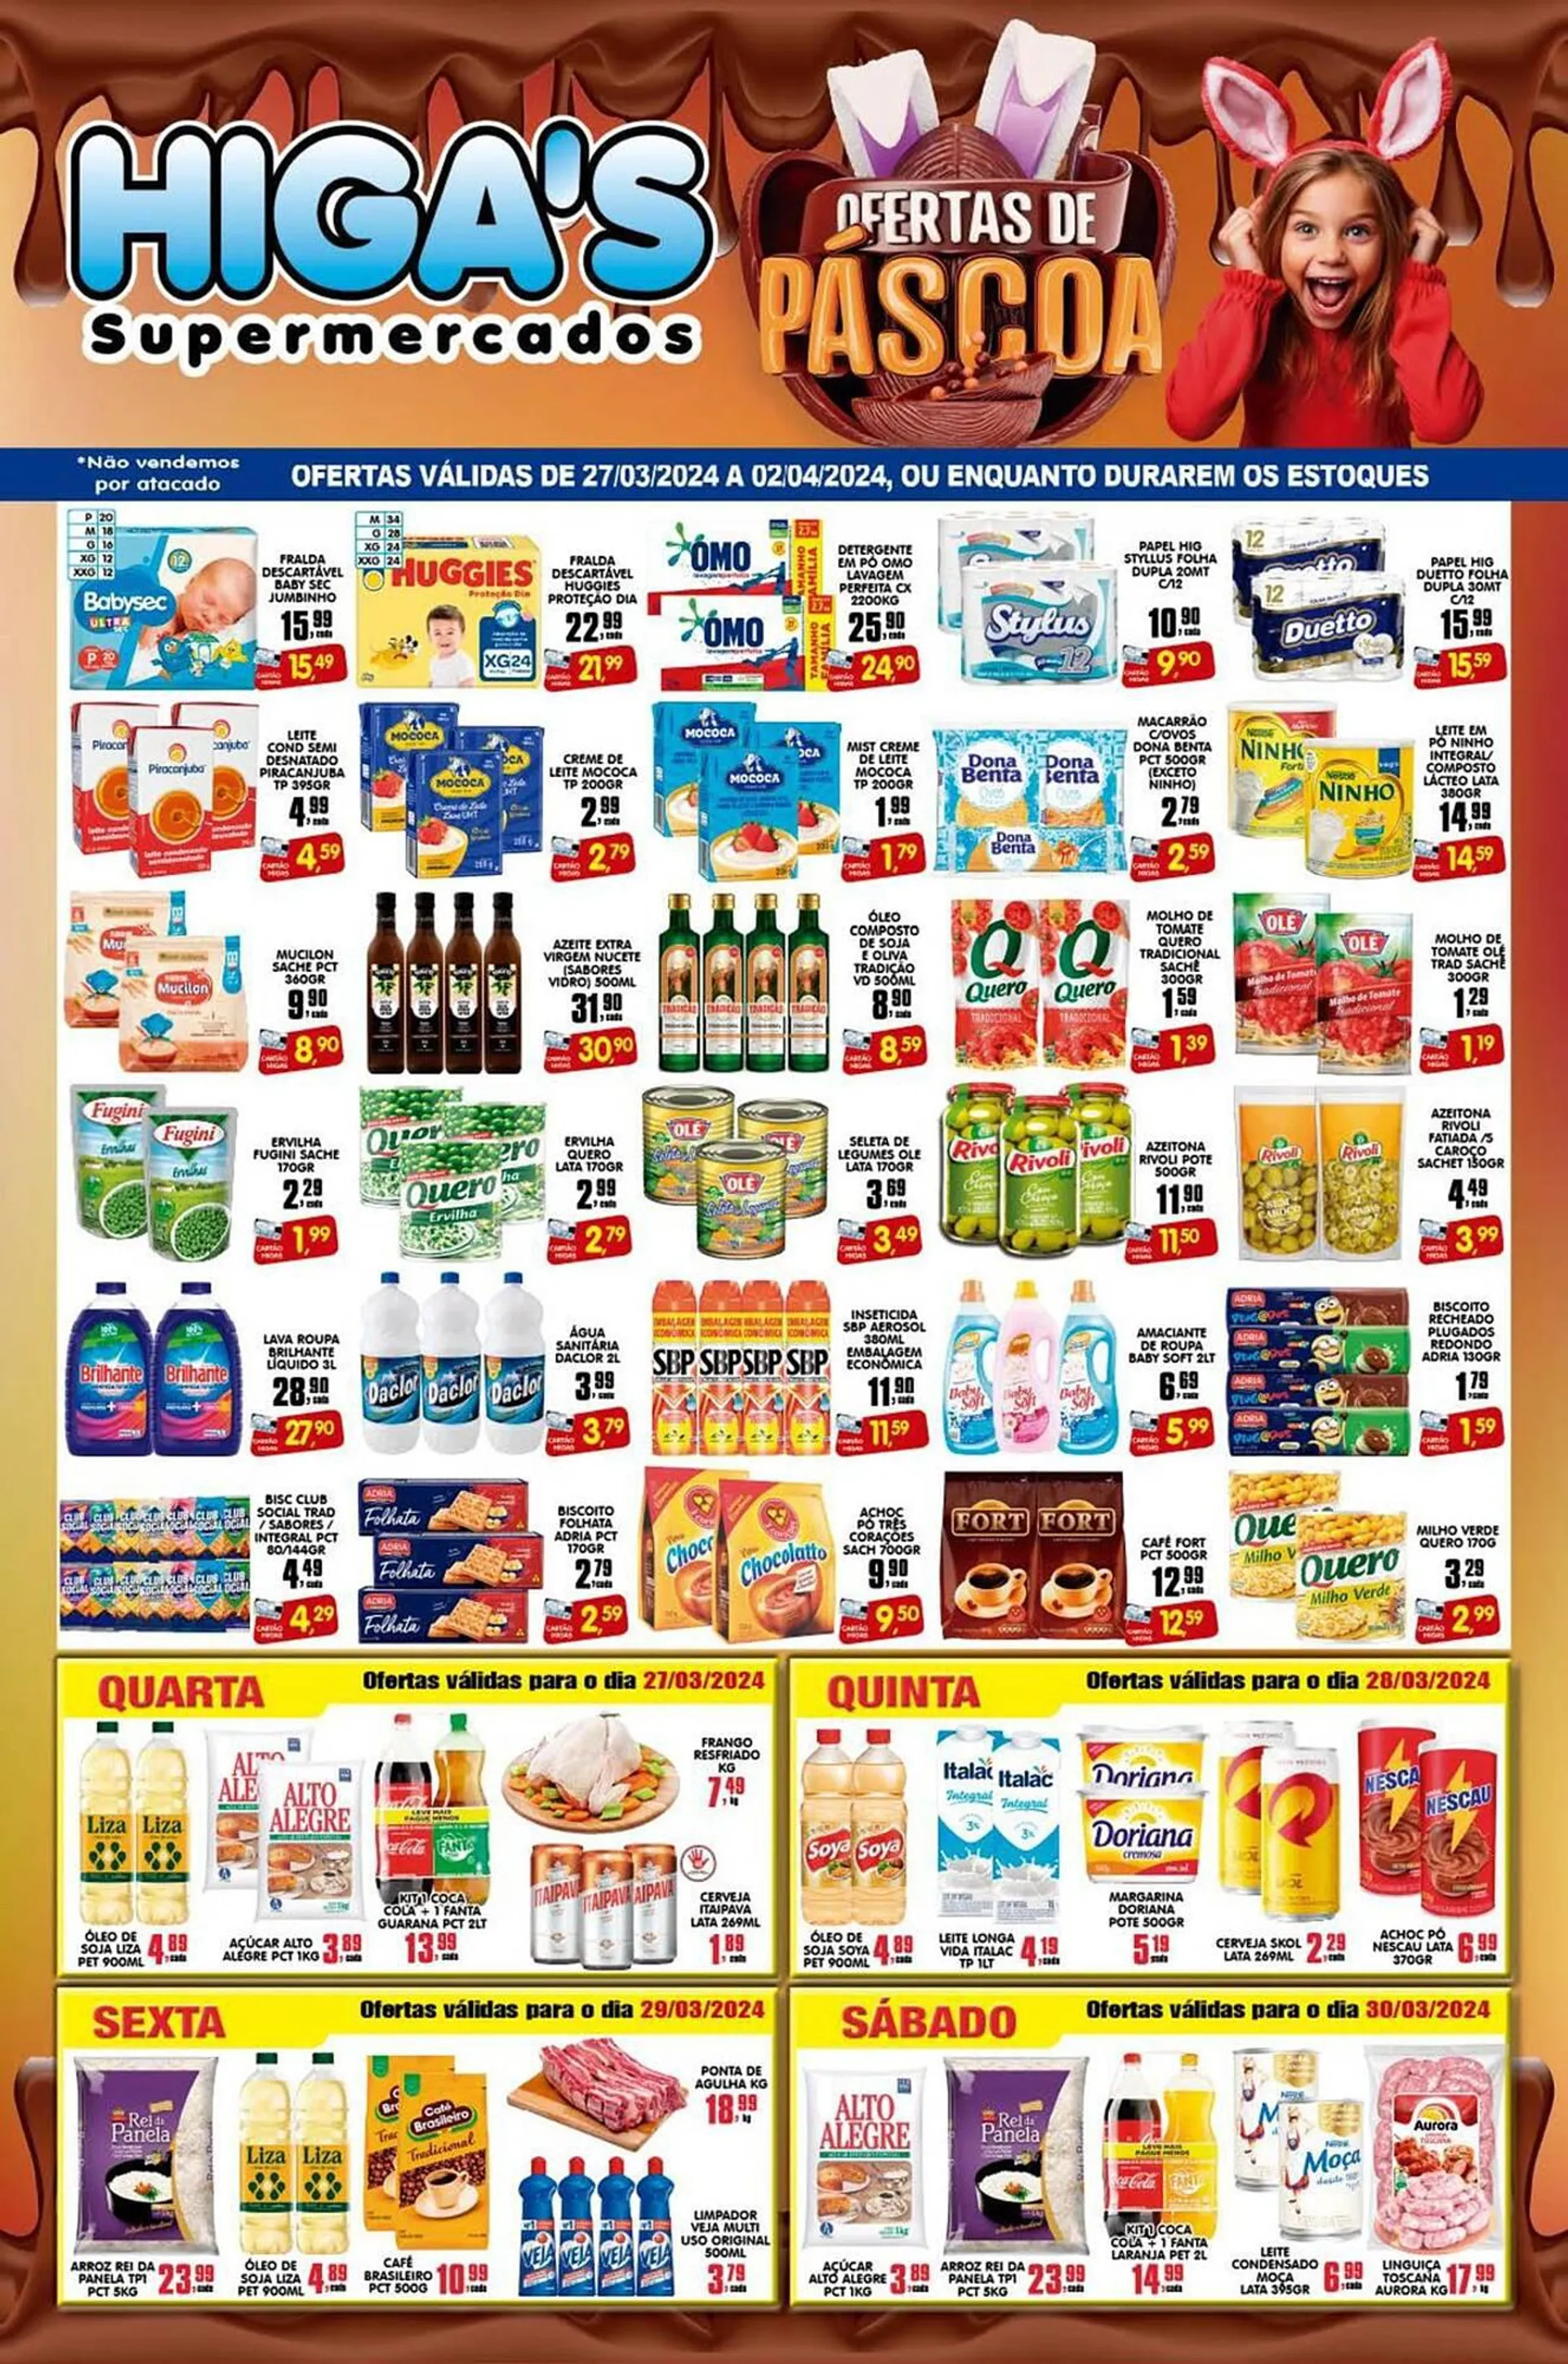 Encarte de Catálogo Higa's Supermercado 27 de março até 2 de abril 2024 - Pagina 1